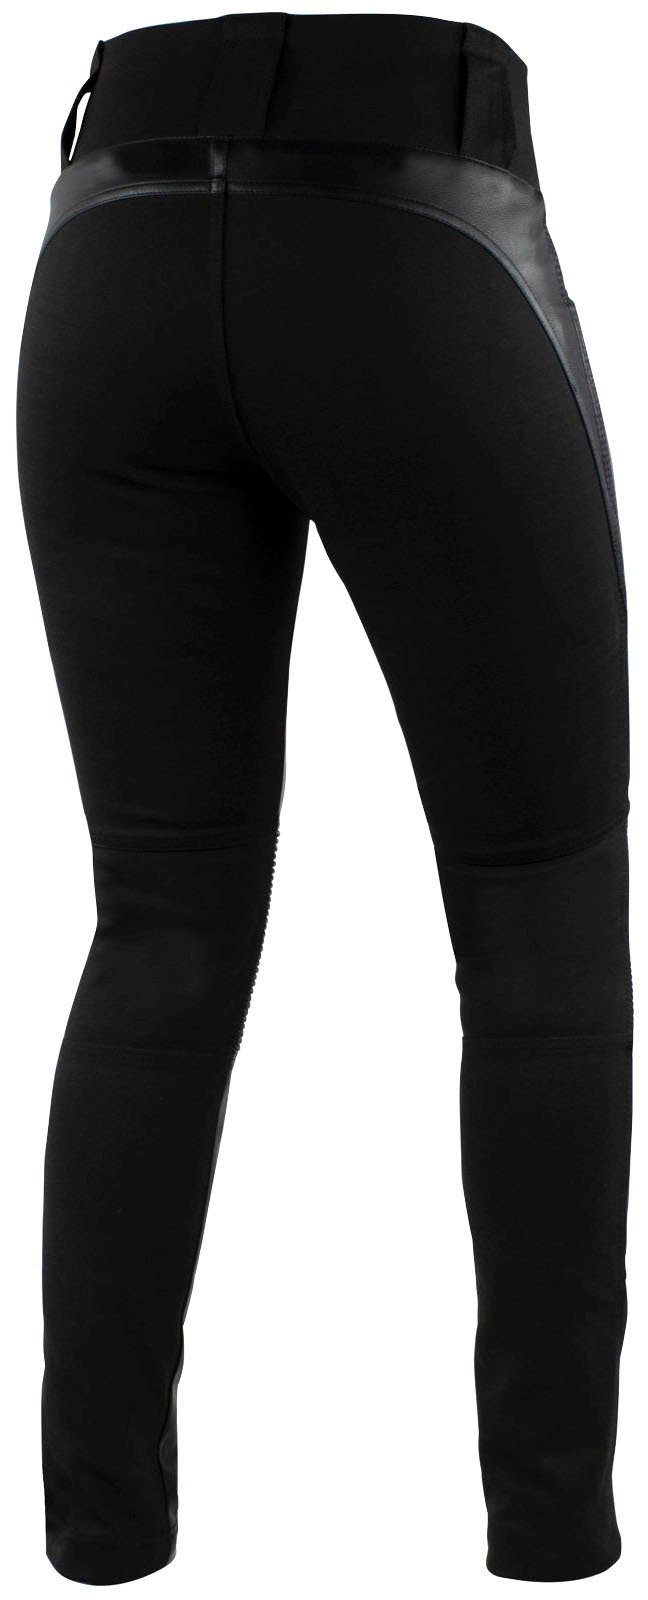 Leder-Leggings Stretcheinsätze und integrierte Kniebereich Damen, im Passform Motorradhose Falco Ergonomische für